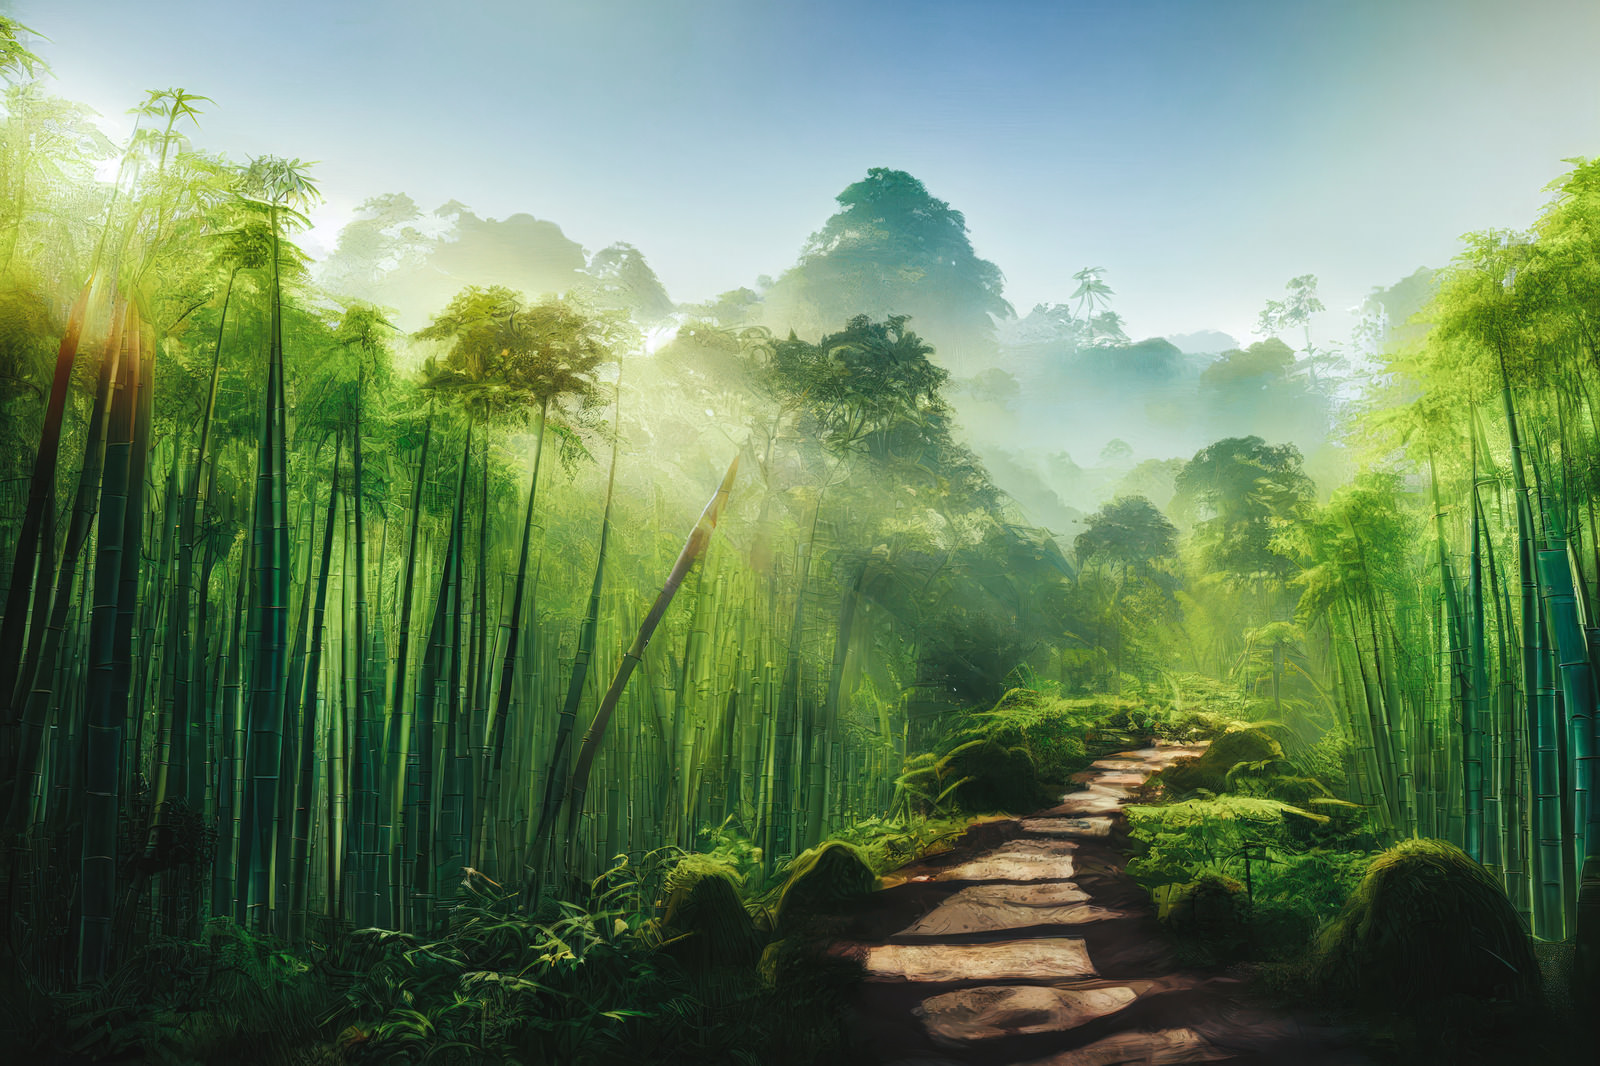 「竹林から注ぐ太陽の光 | フリー素材のぱくたそ」の写真